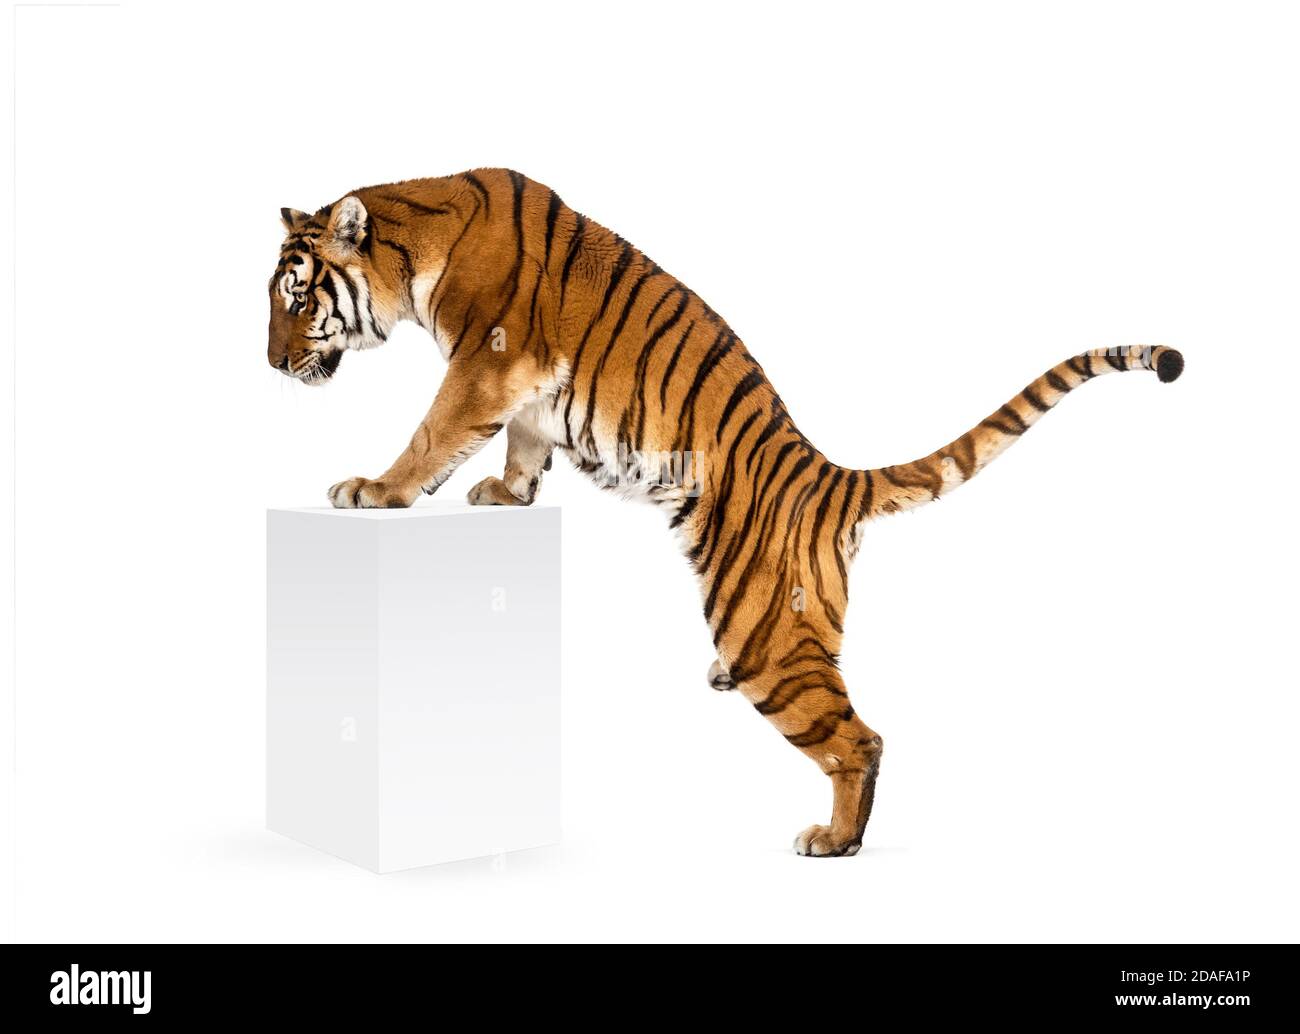 Tiger alzarsi una scatola bianca, isolato su bianco Foto Stock